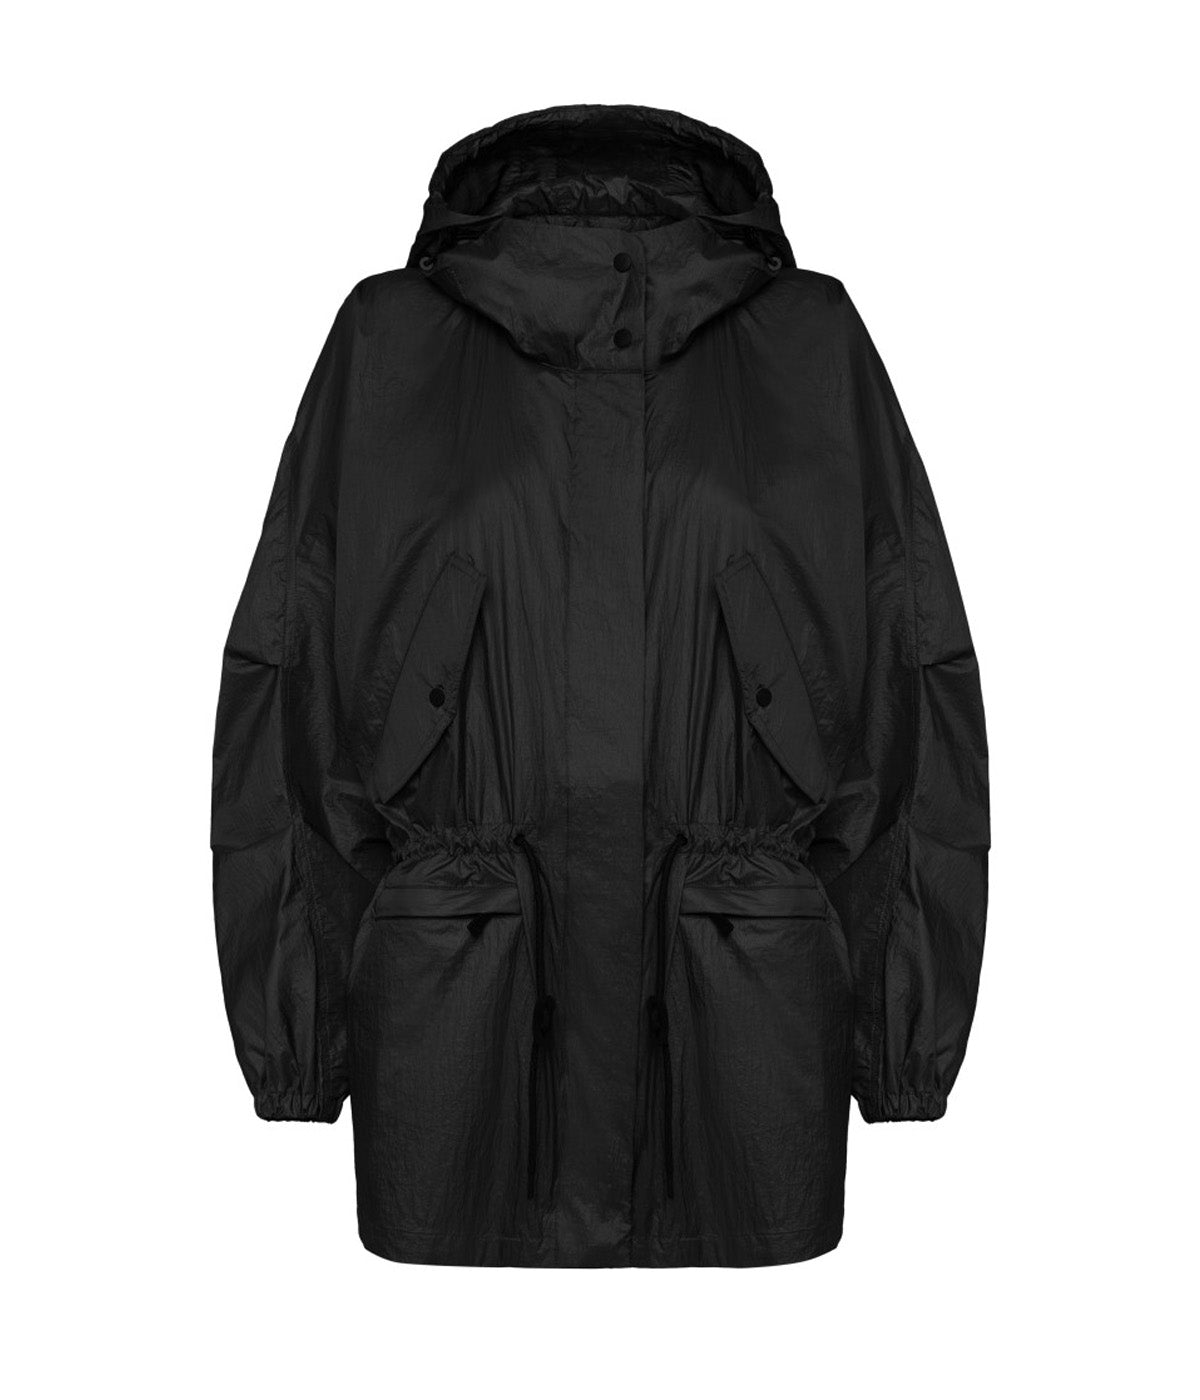 Hooded Jacket in Black